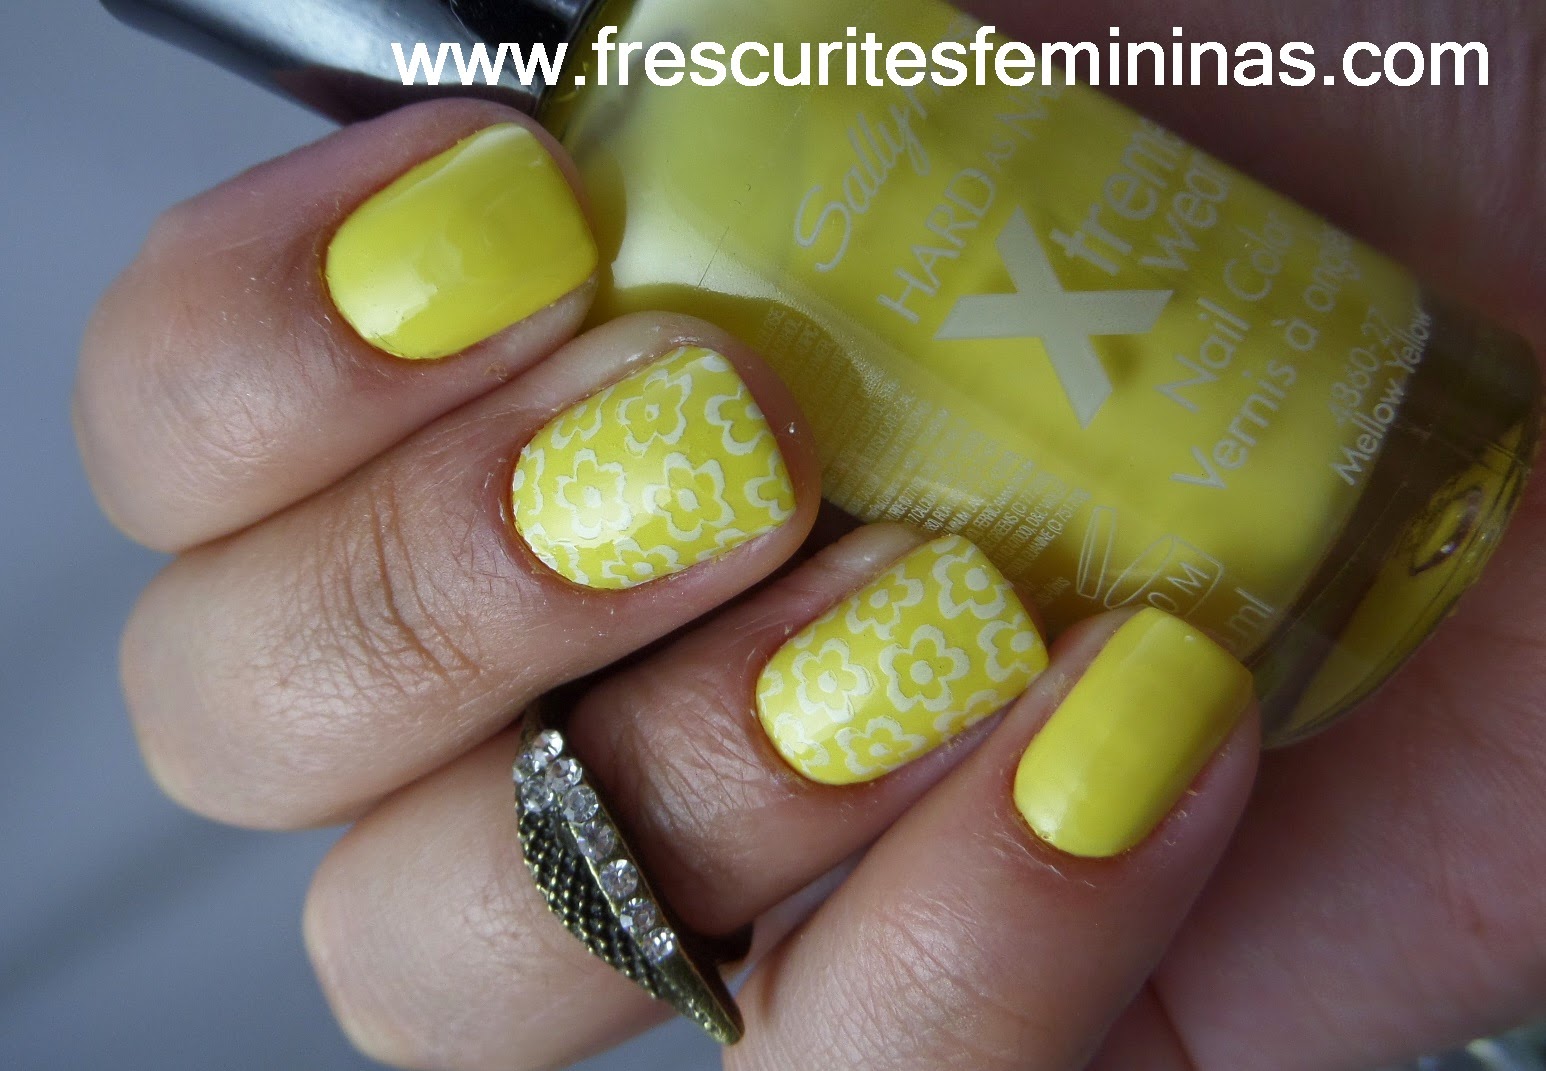 Frescurites Femininas, Yellow Nails, Mellow Yellow